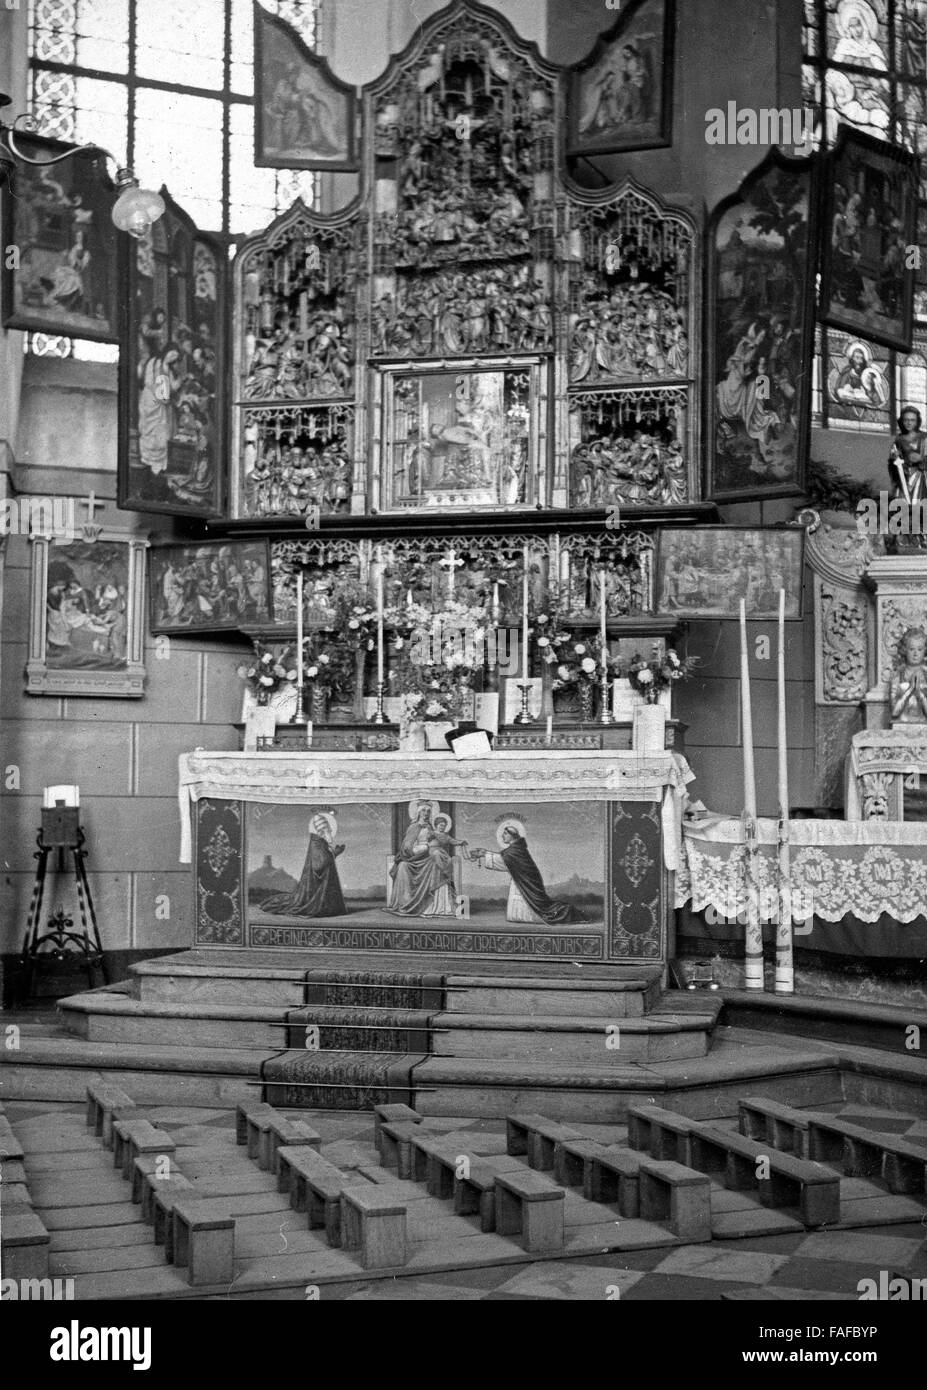 Am Hochaltar der Wallfahrtskirche San Clemens in Heimbach in der Eifel, Deutschland 1930er Jahre. L'altare della chiesa di pellegrinaggio di San Clemente a Heimbach nella regione Eifel, Germania 1930s. Foto Stock